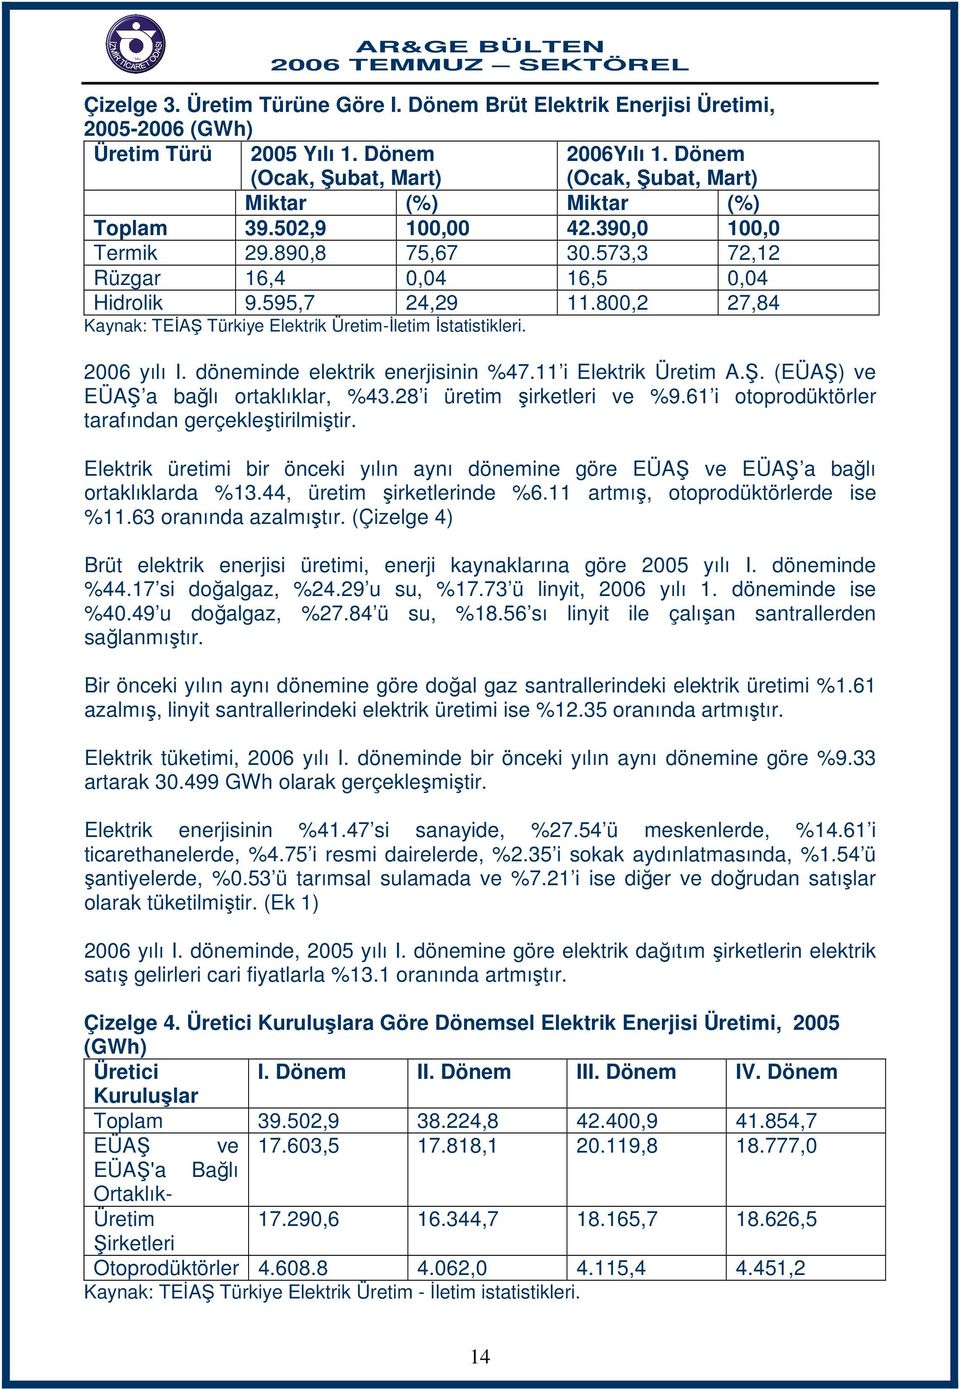 800,2 27,84 Kaynak: TEİAŞ Türkiye Elektrik Üretim-İletim İstatistikleri. 2006 yılı I. döneminde elektrik enerjisinin %47.11 i Elektrik Üretim A.Ş. (EÜAŞ) ve EÜAŞ a bağlı ortaklıklar, %43.